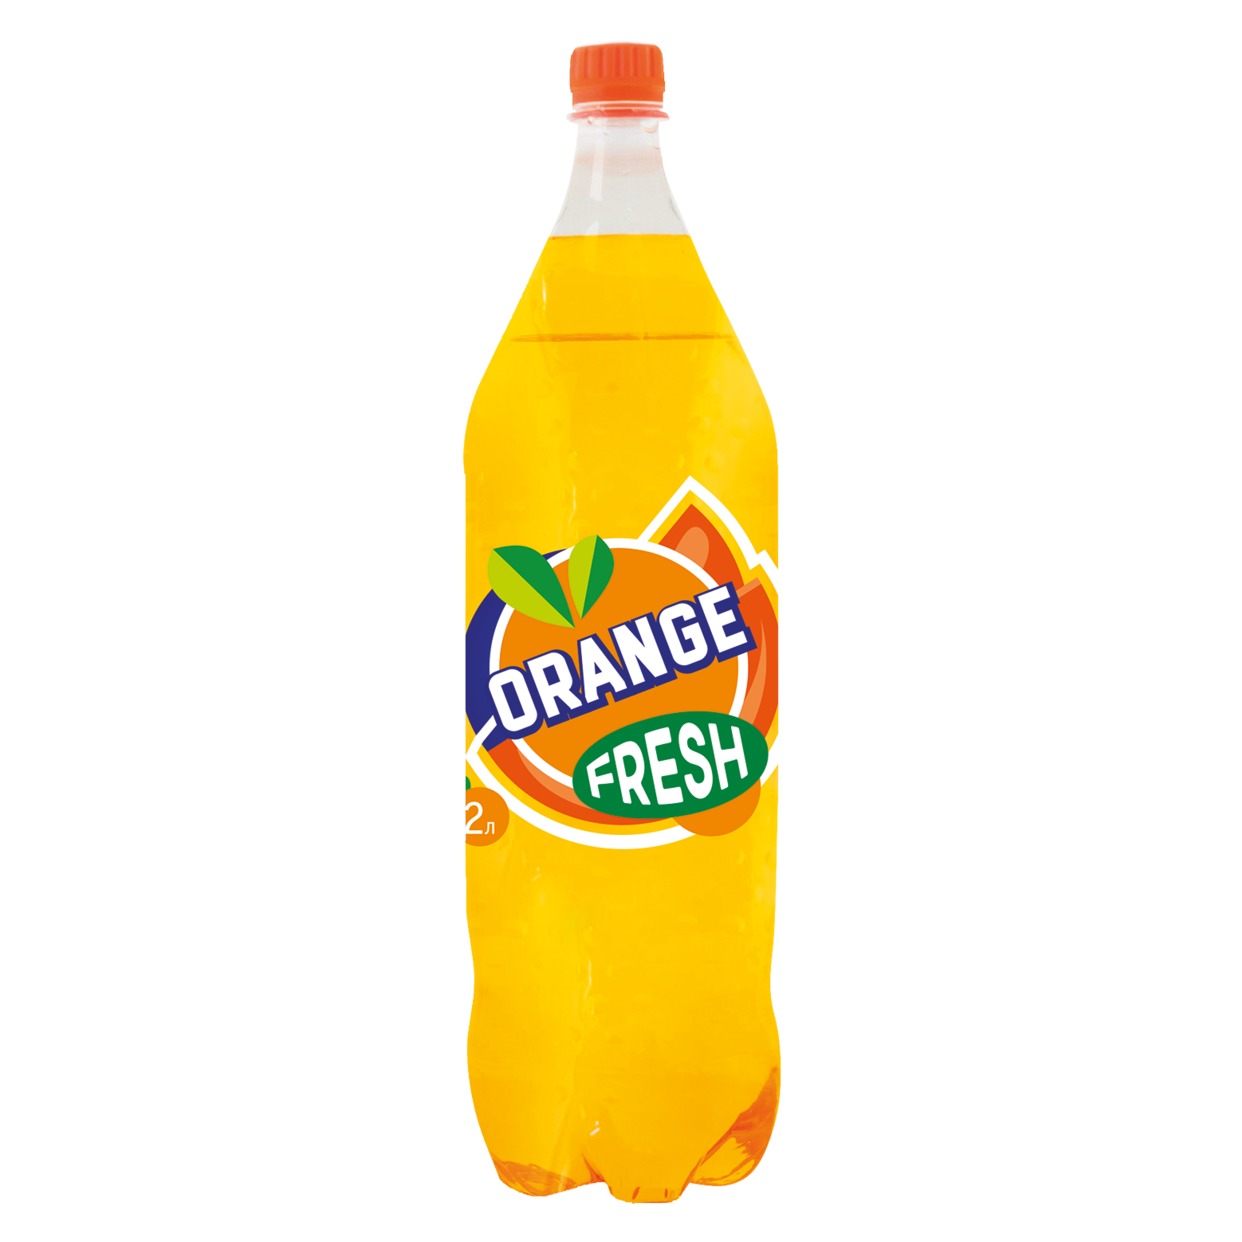 Напиток Fresh Orange, сильногазированный, 2 л по акции в Пятерочке